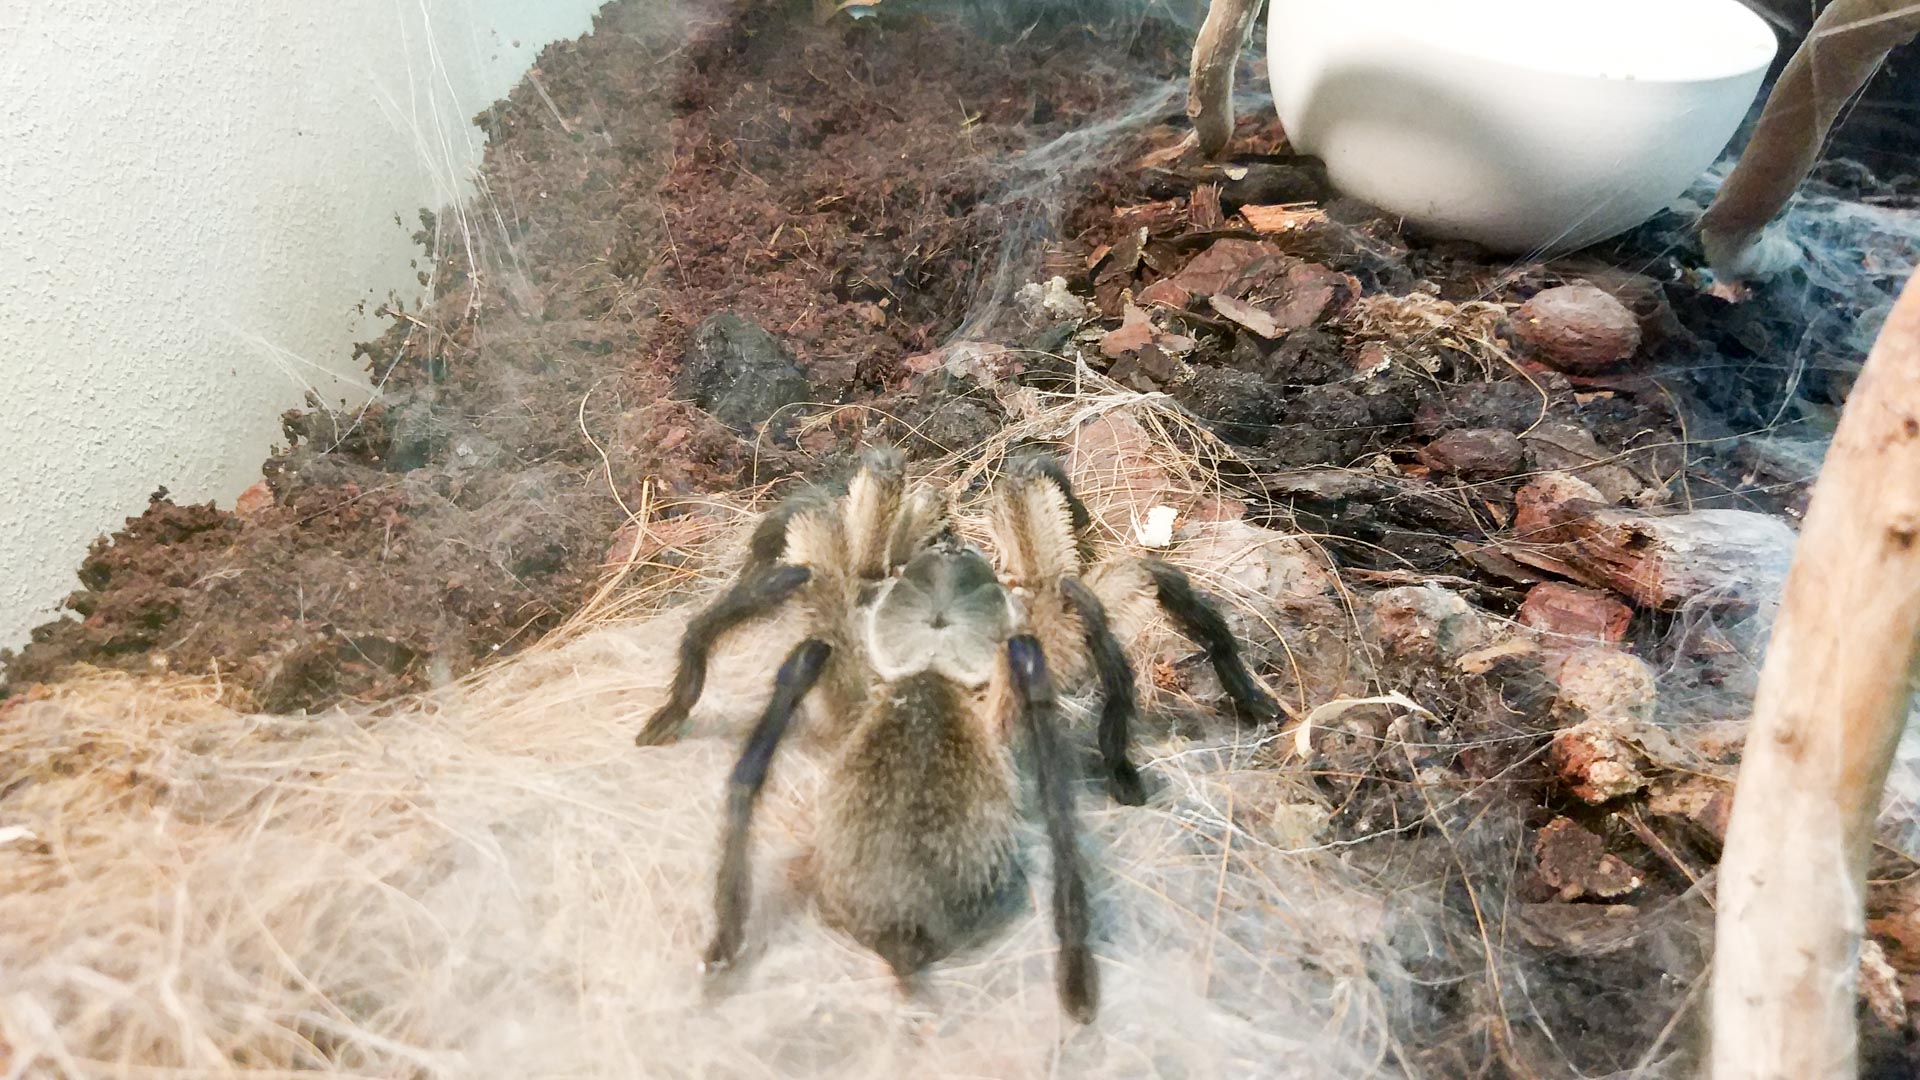 Выставка "Удивительный мир пауков"